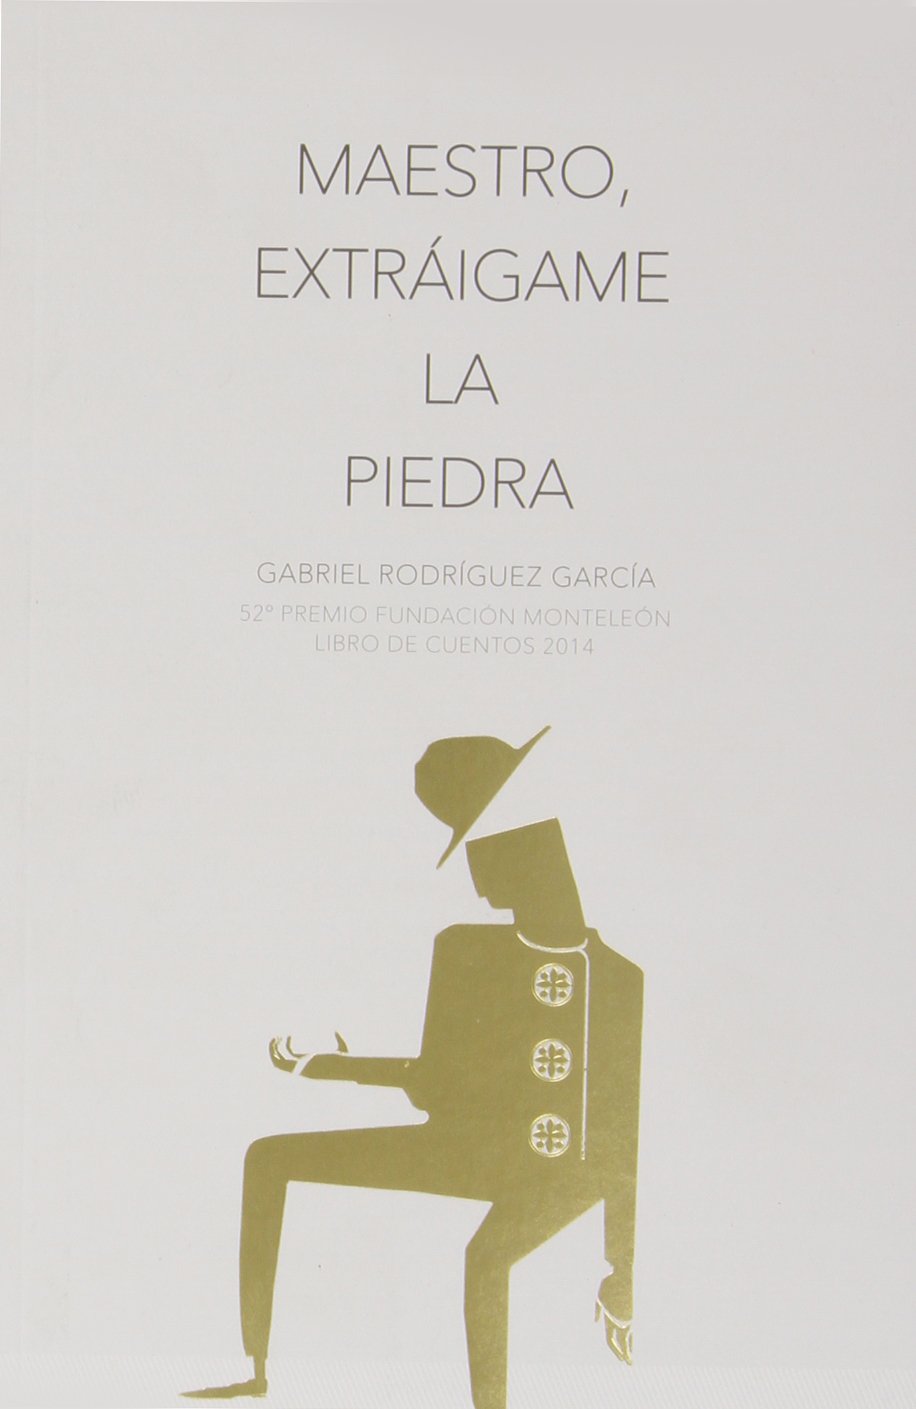 Maestro, Extráigame la Piedra 52º Premio Fundación Monteleón Libro de Cuentos 2014-0